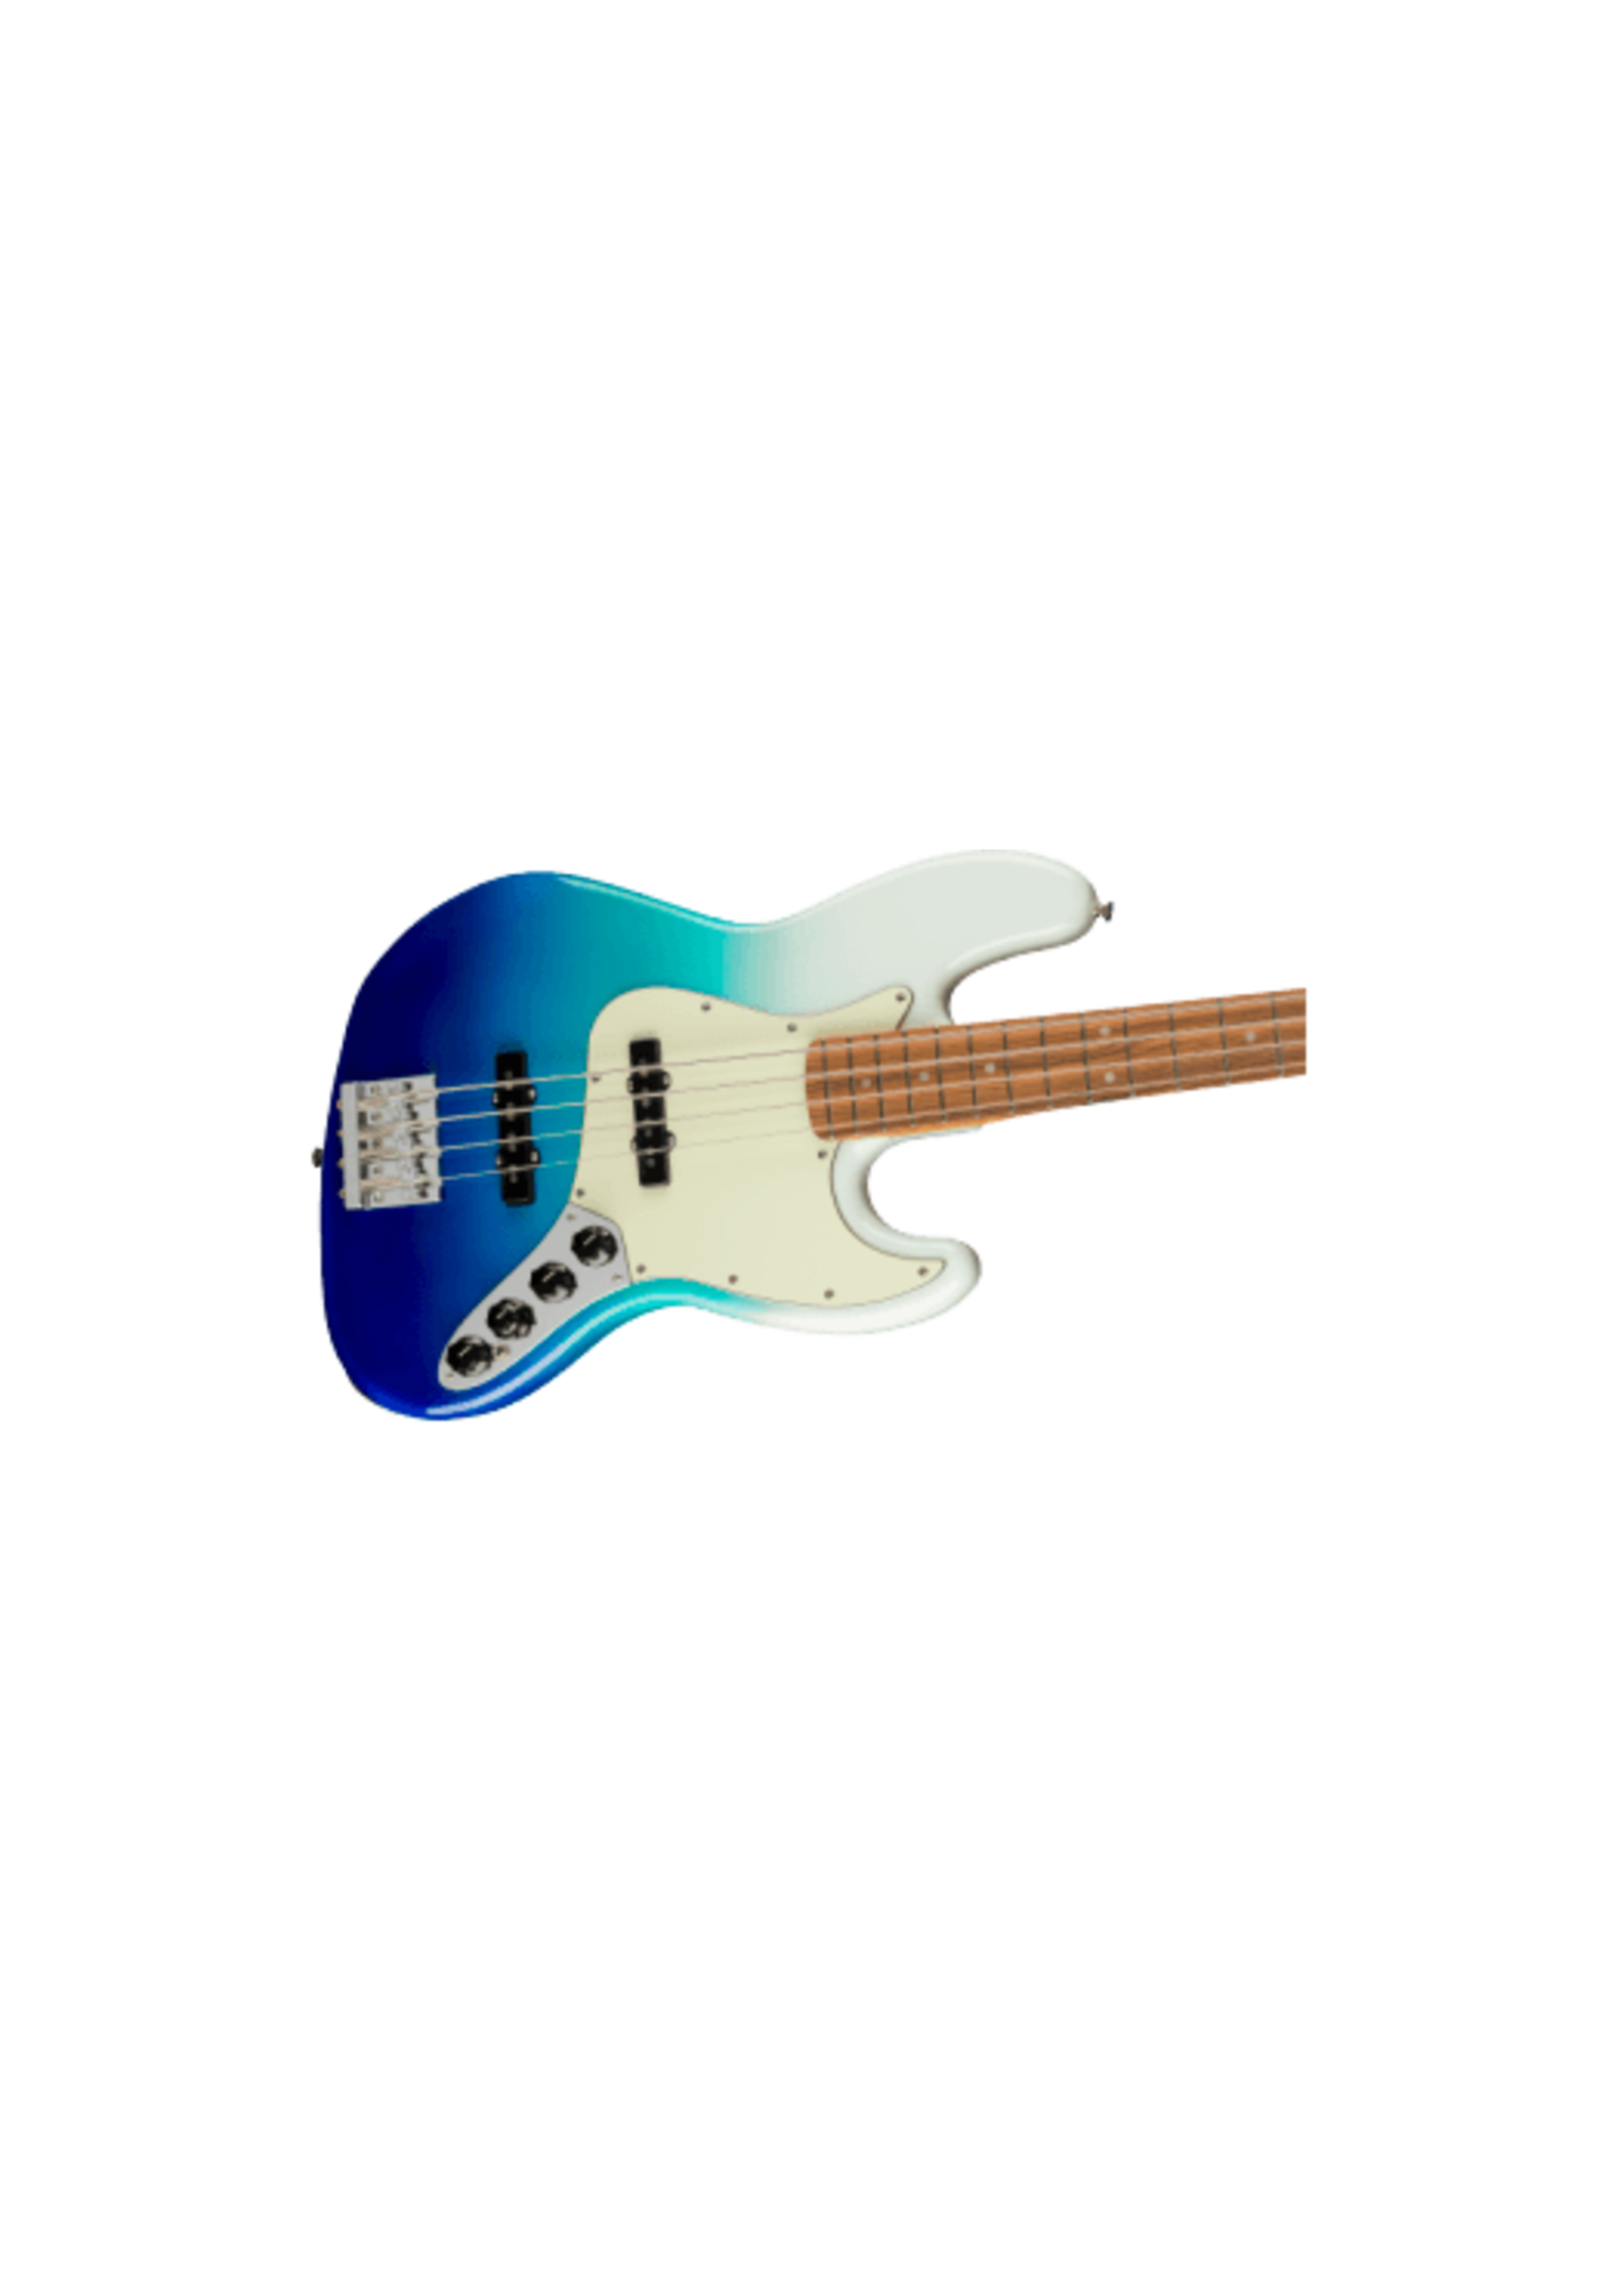 Fender Fender Player Plus Jazz Bass